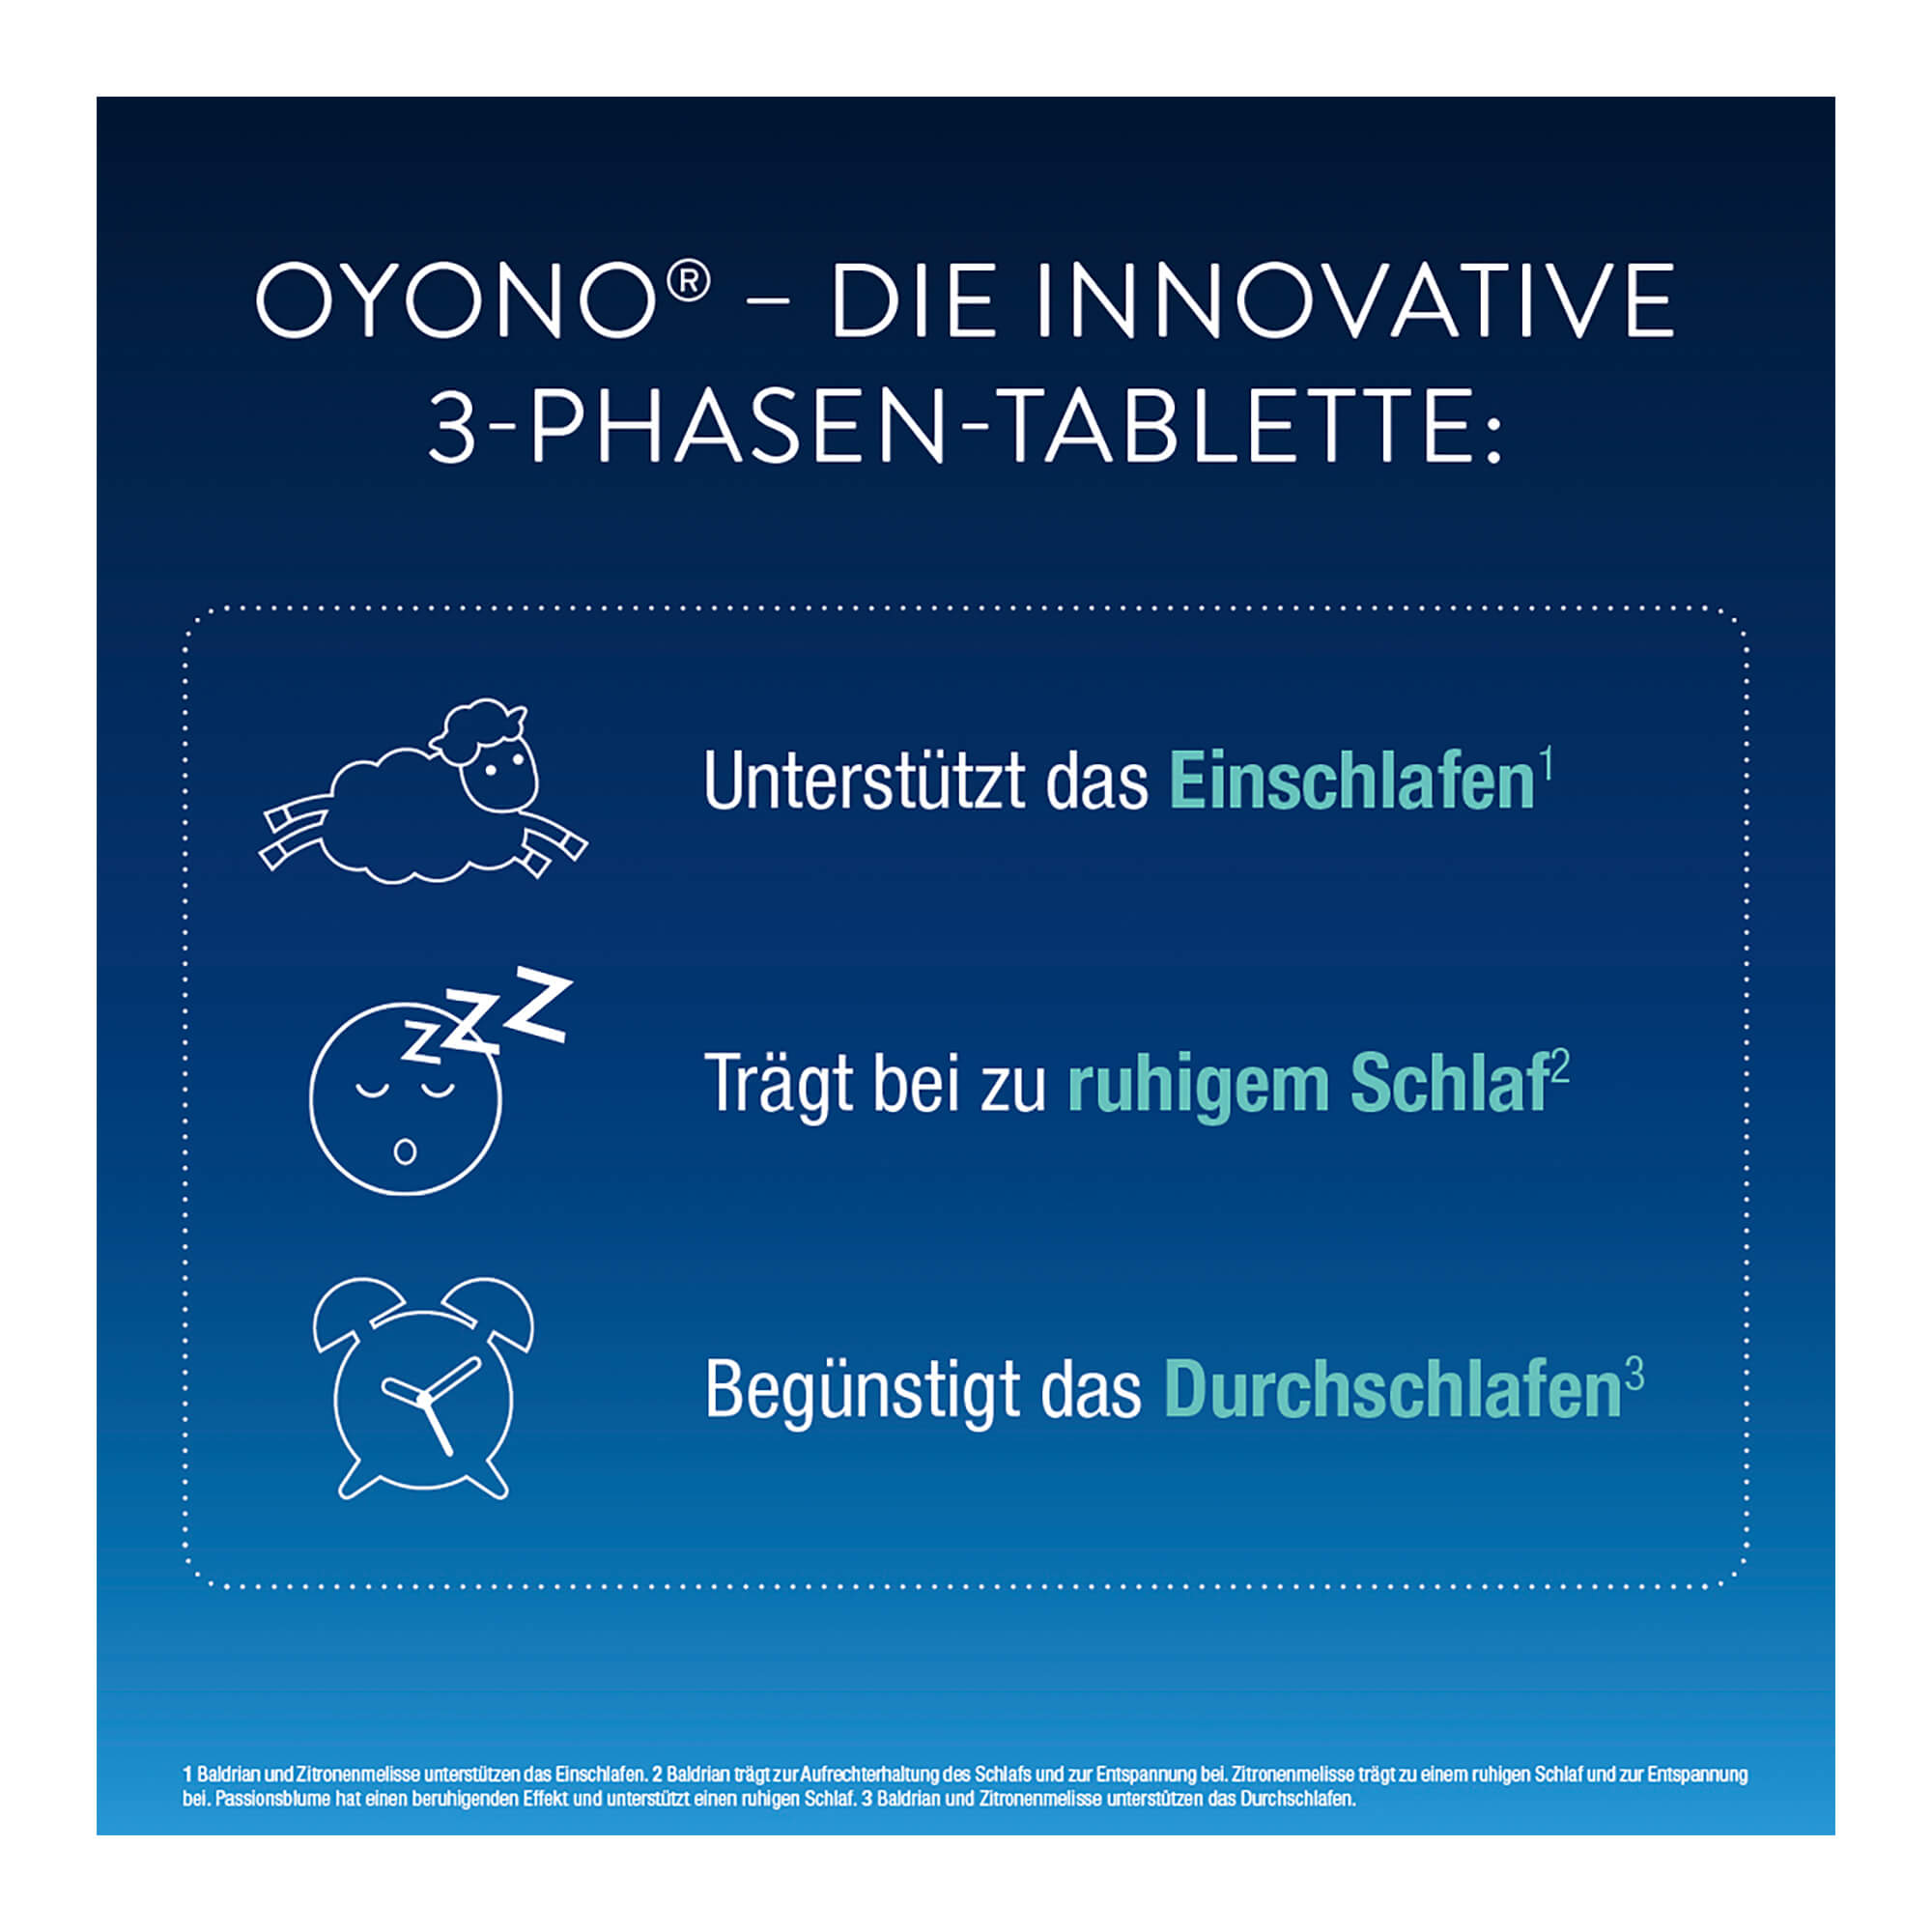 Grafik OYONO Nacht innovative 3-Phasen Tablette